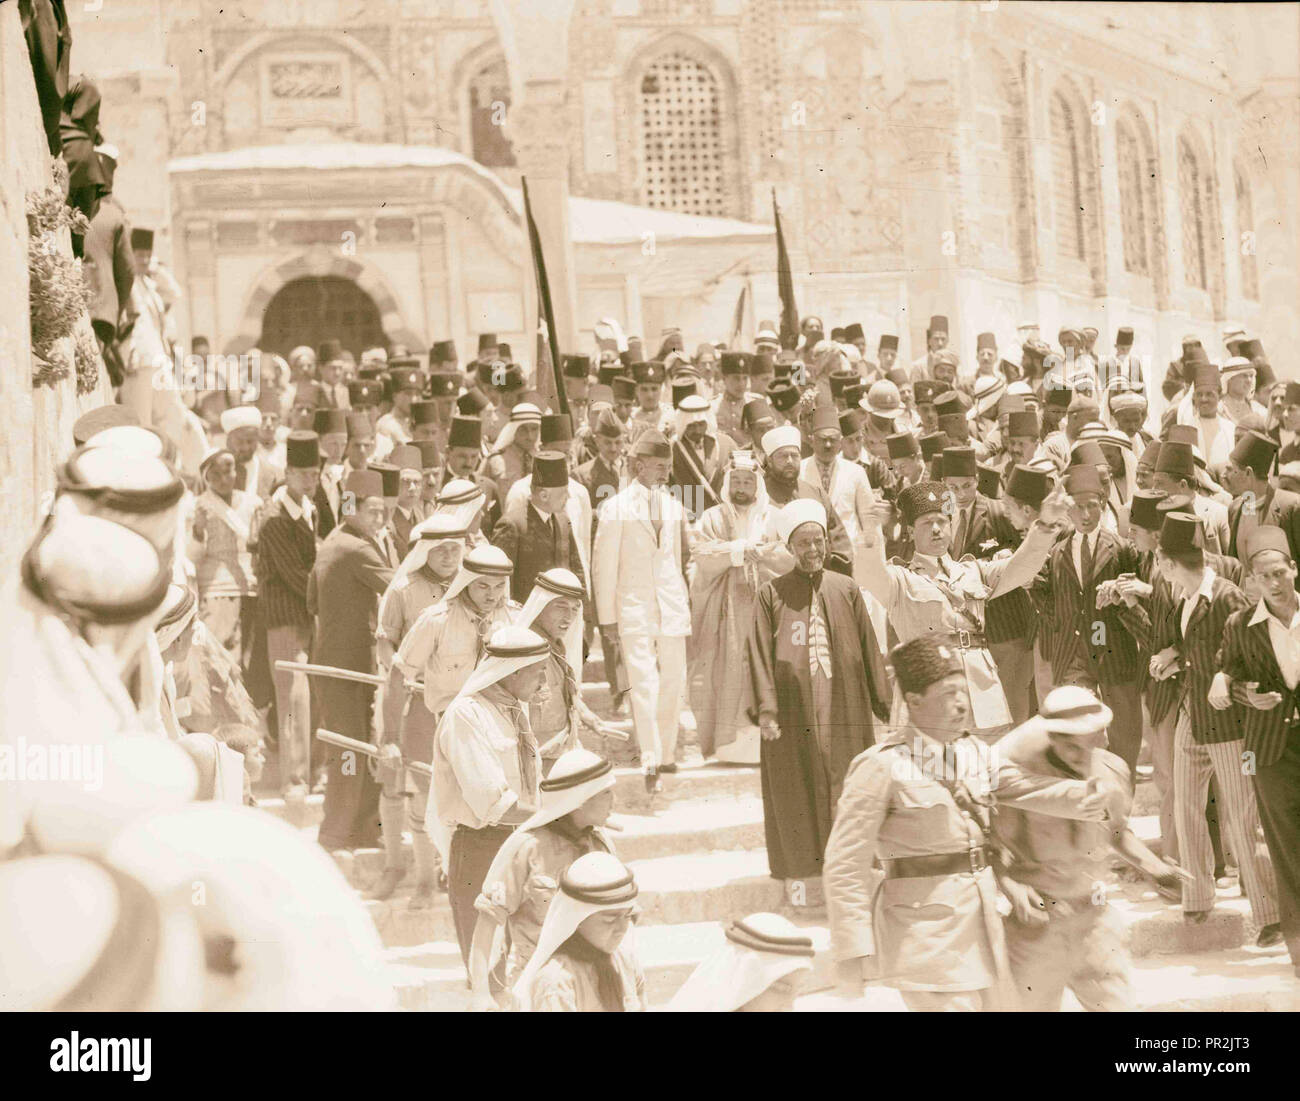 König Feisal des letzten Besuch in Jerusalem. Verstorbene König Feisal des Irak in der Nähe der 'edle Heiligtum." Von den Massen bejubelt, 8. Juni 1933 Stockfoto